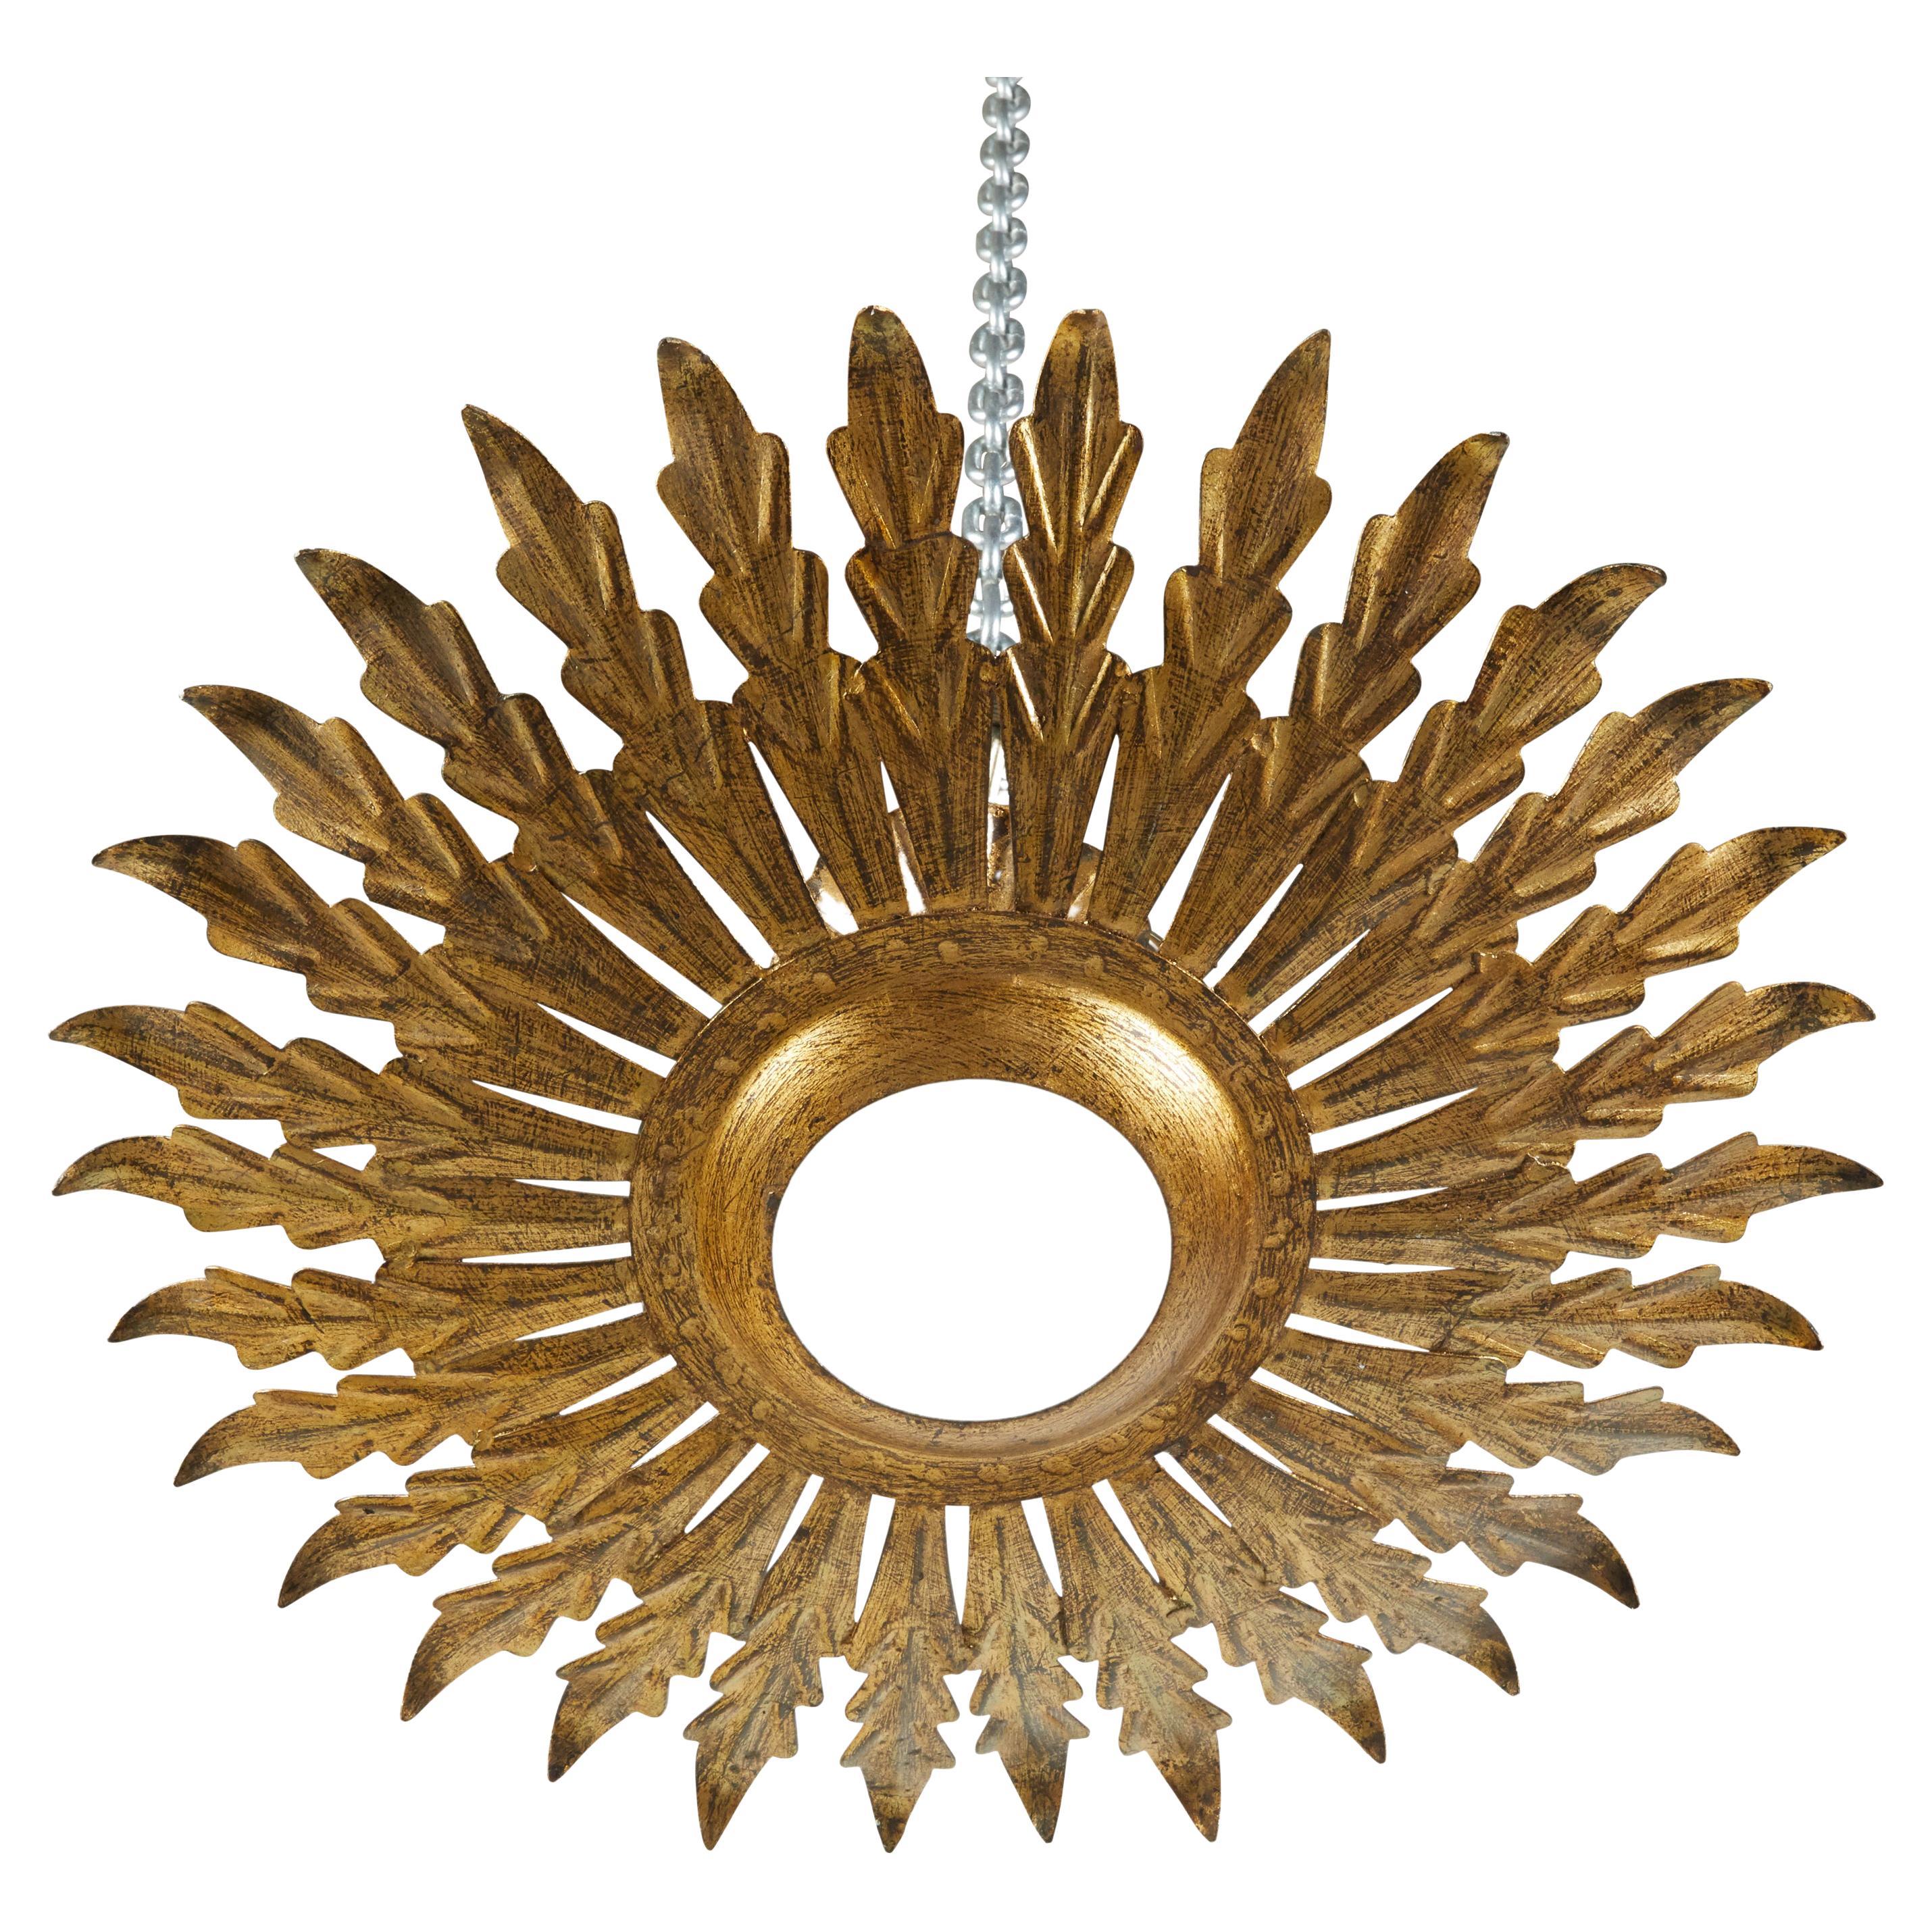 Spanischer Kronleuchter aus vergoldetem Metall aus der Mitte des 20. Jahrhunderts mit Blattmotiven, mattiertem Glas und Patina. Dieser Kronleuchter, der in der Mitte des Jahrhunderts in Spanien geschaffen wurde, besteht aus einem runden Körper, der